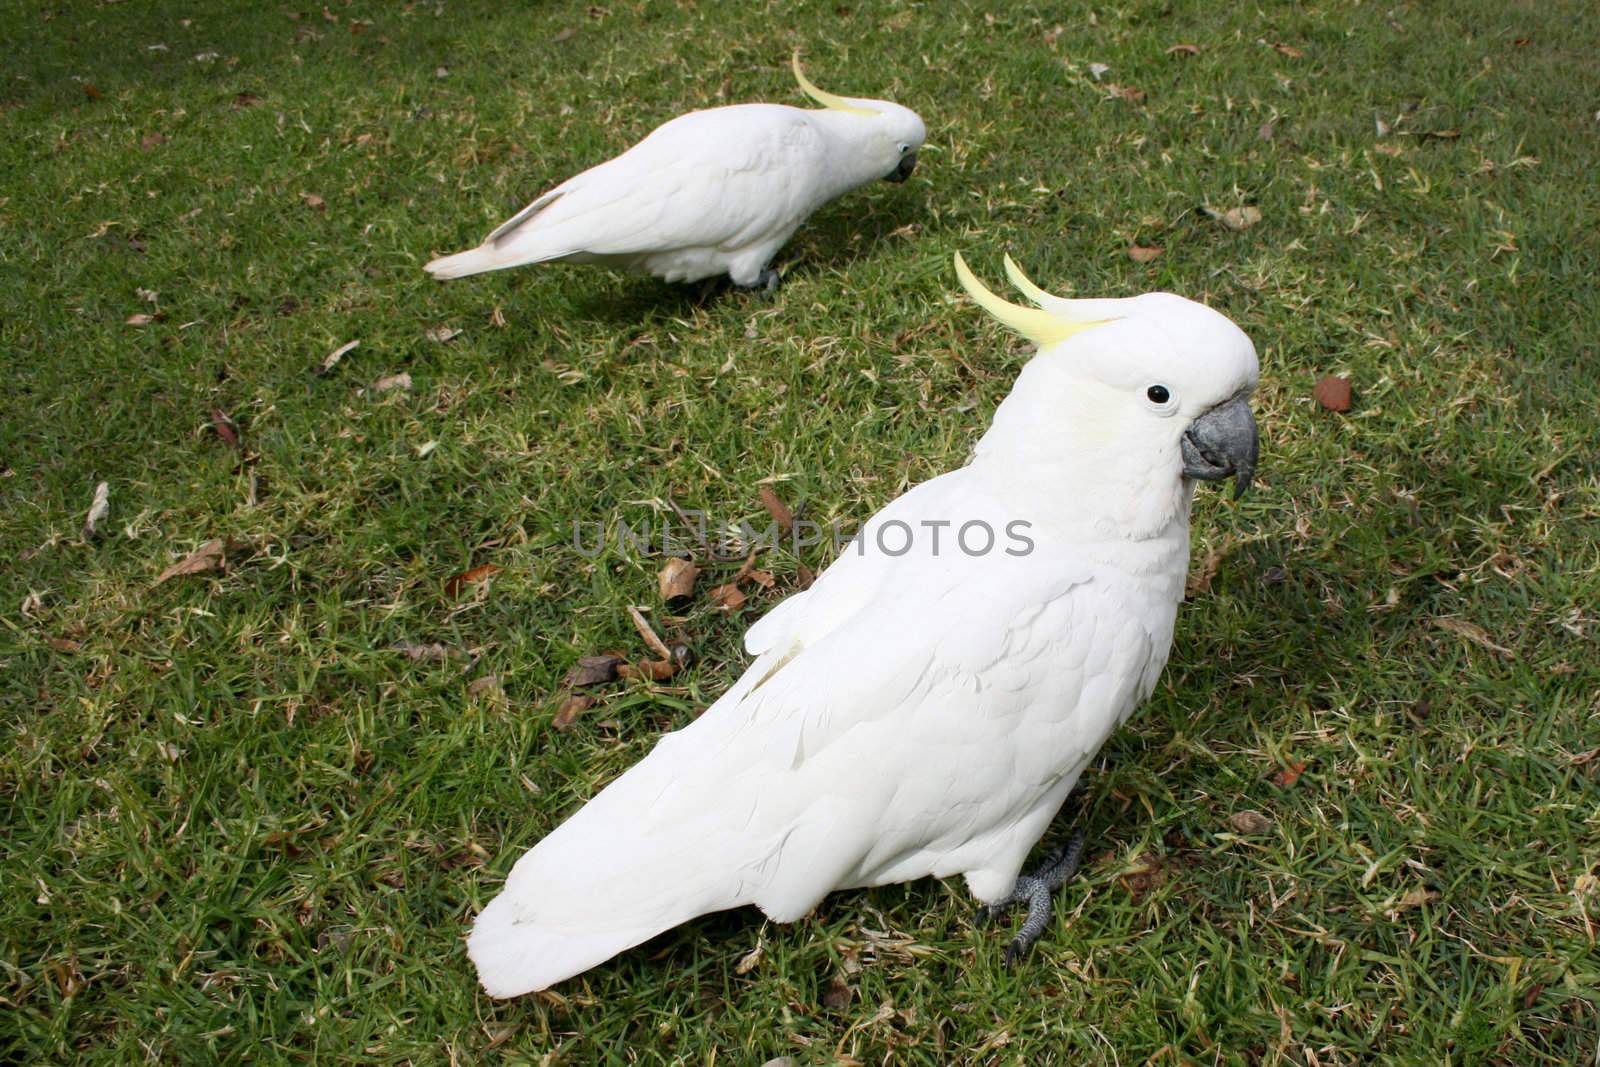 Cockatoos in park by leeser